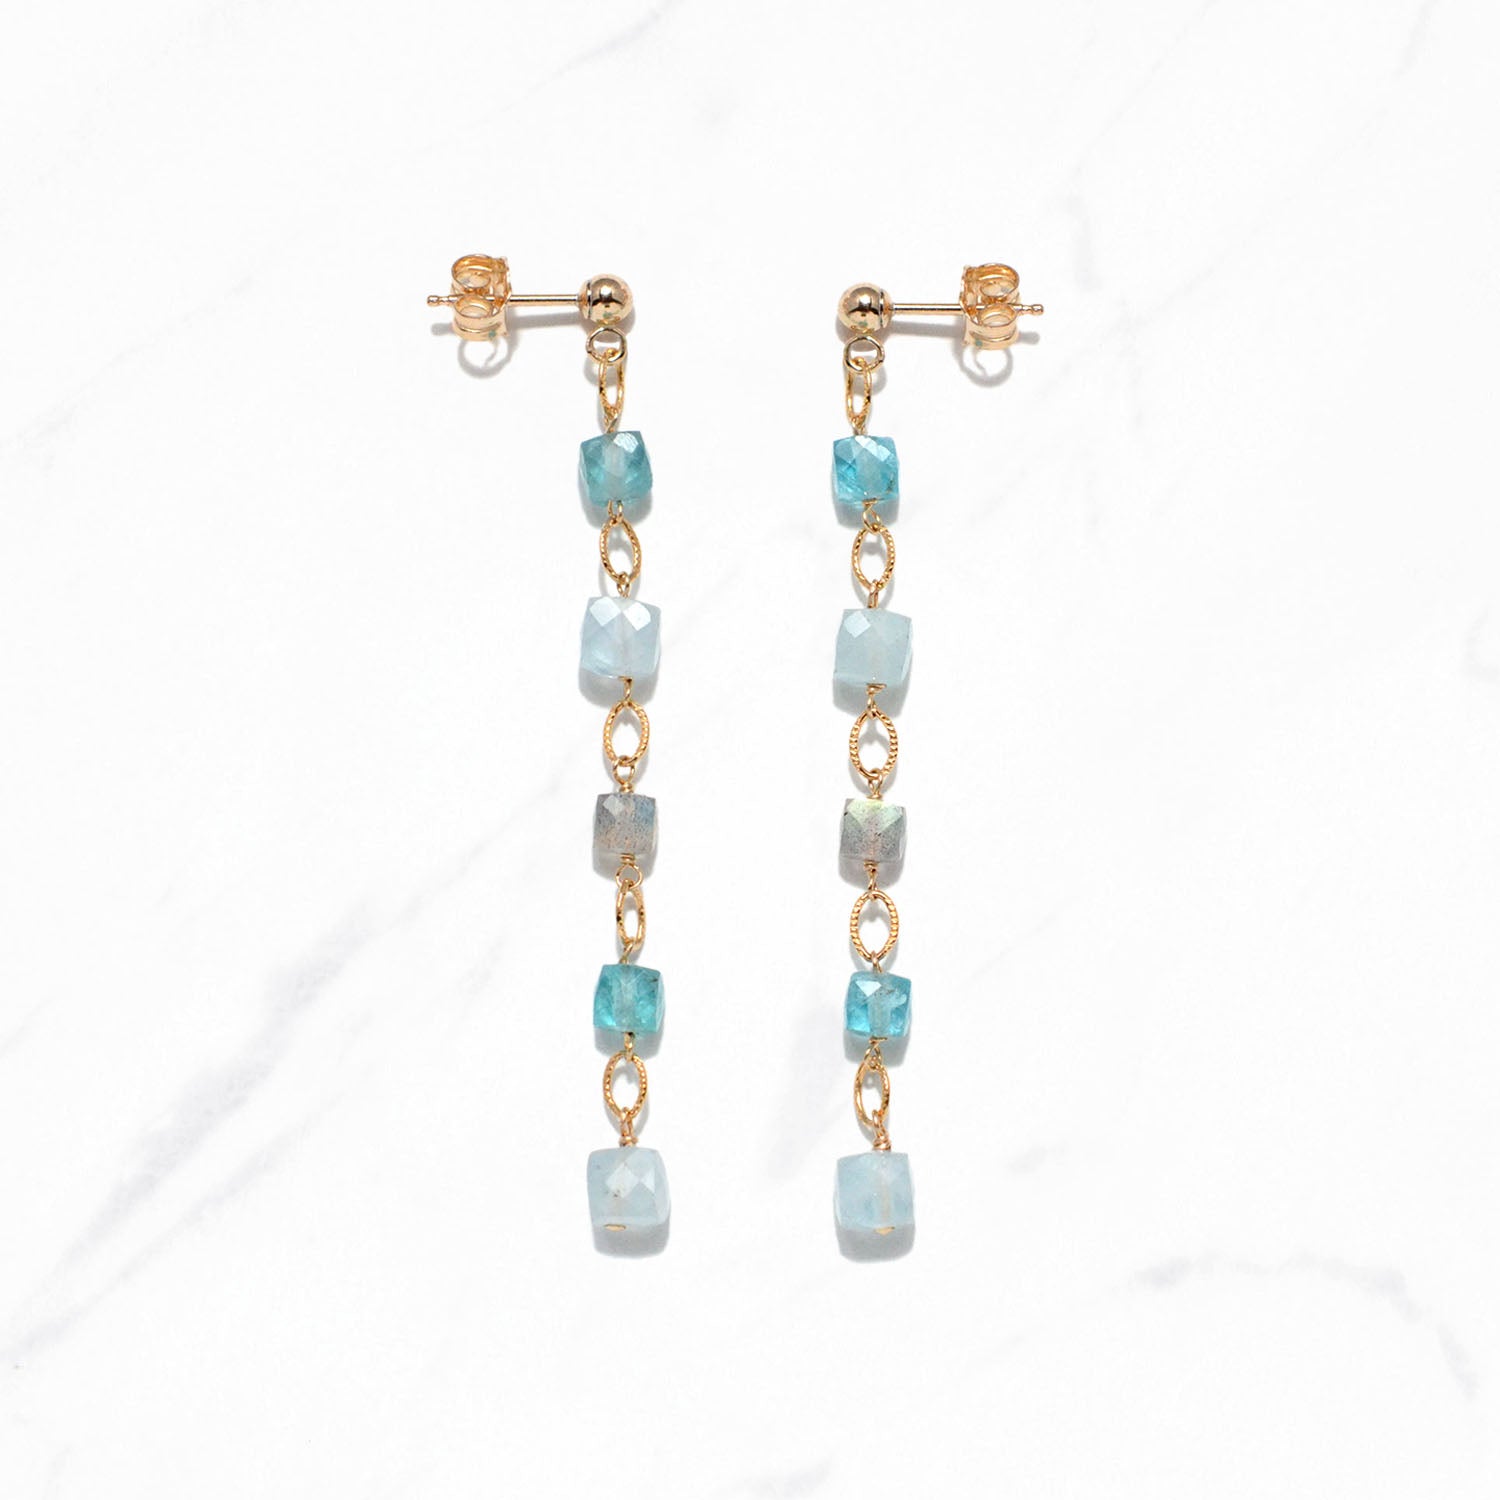 Colorful Gemstones Dangling Earrings (Aqua)